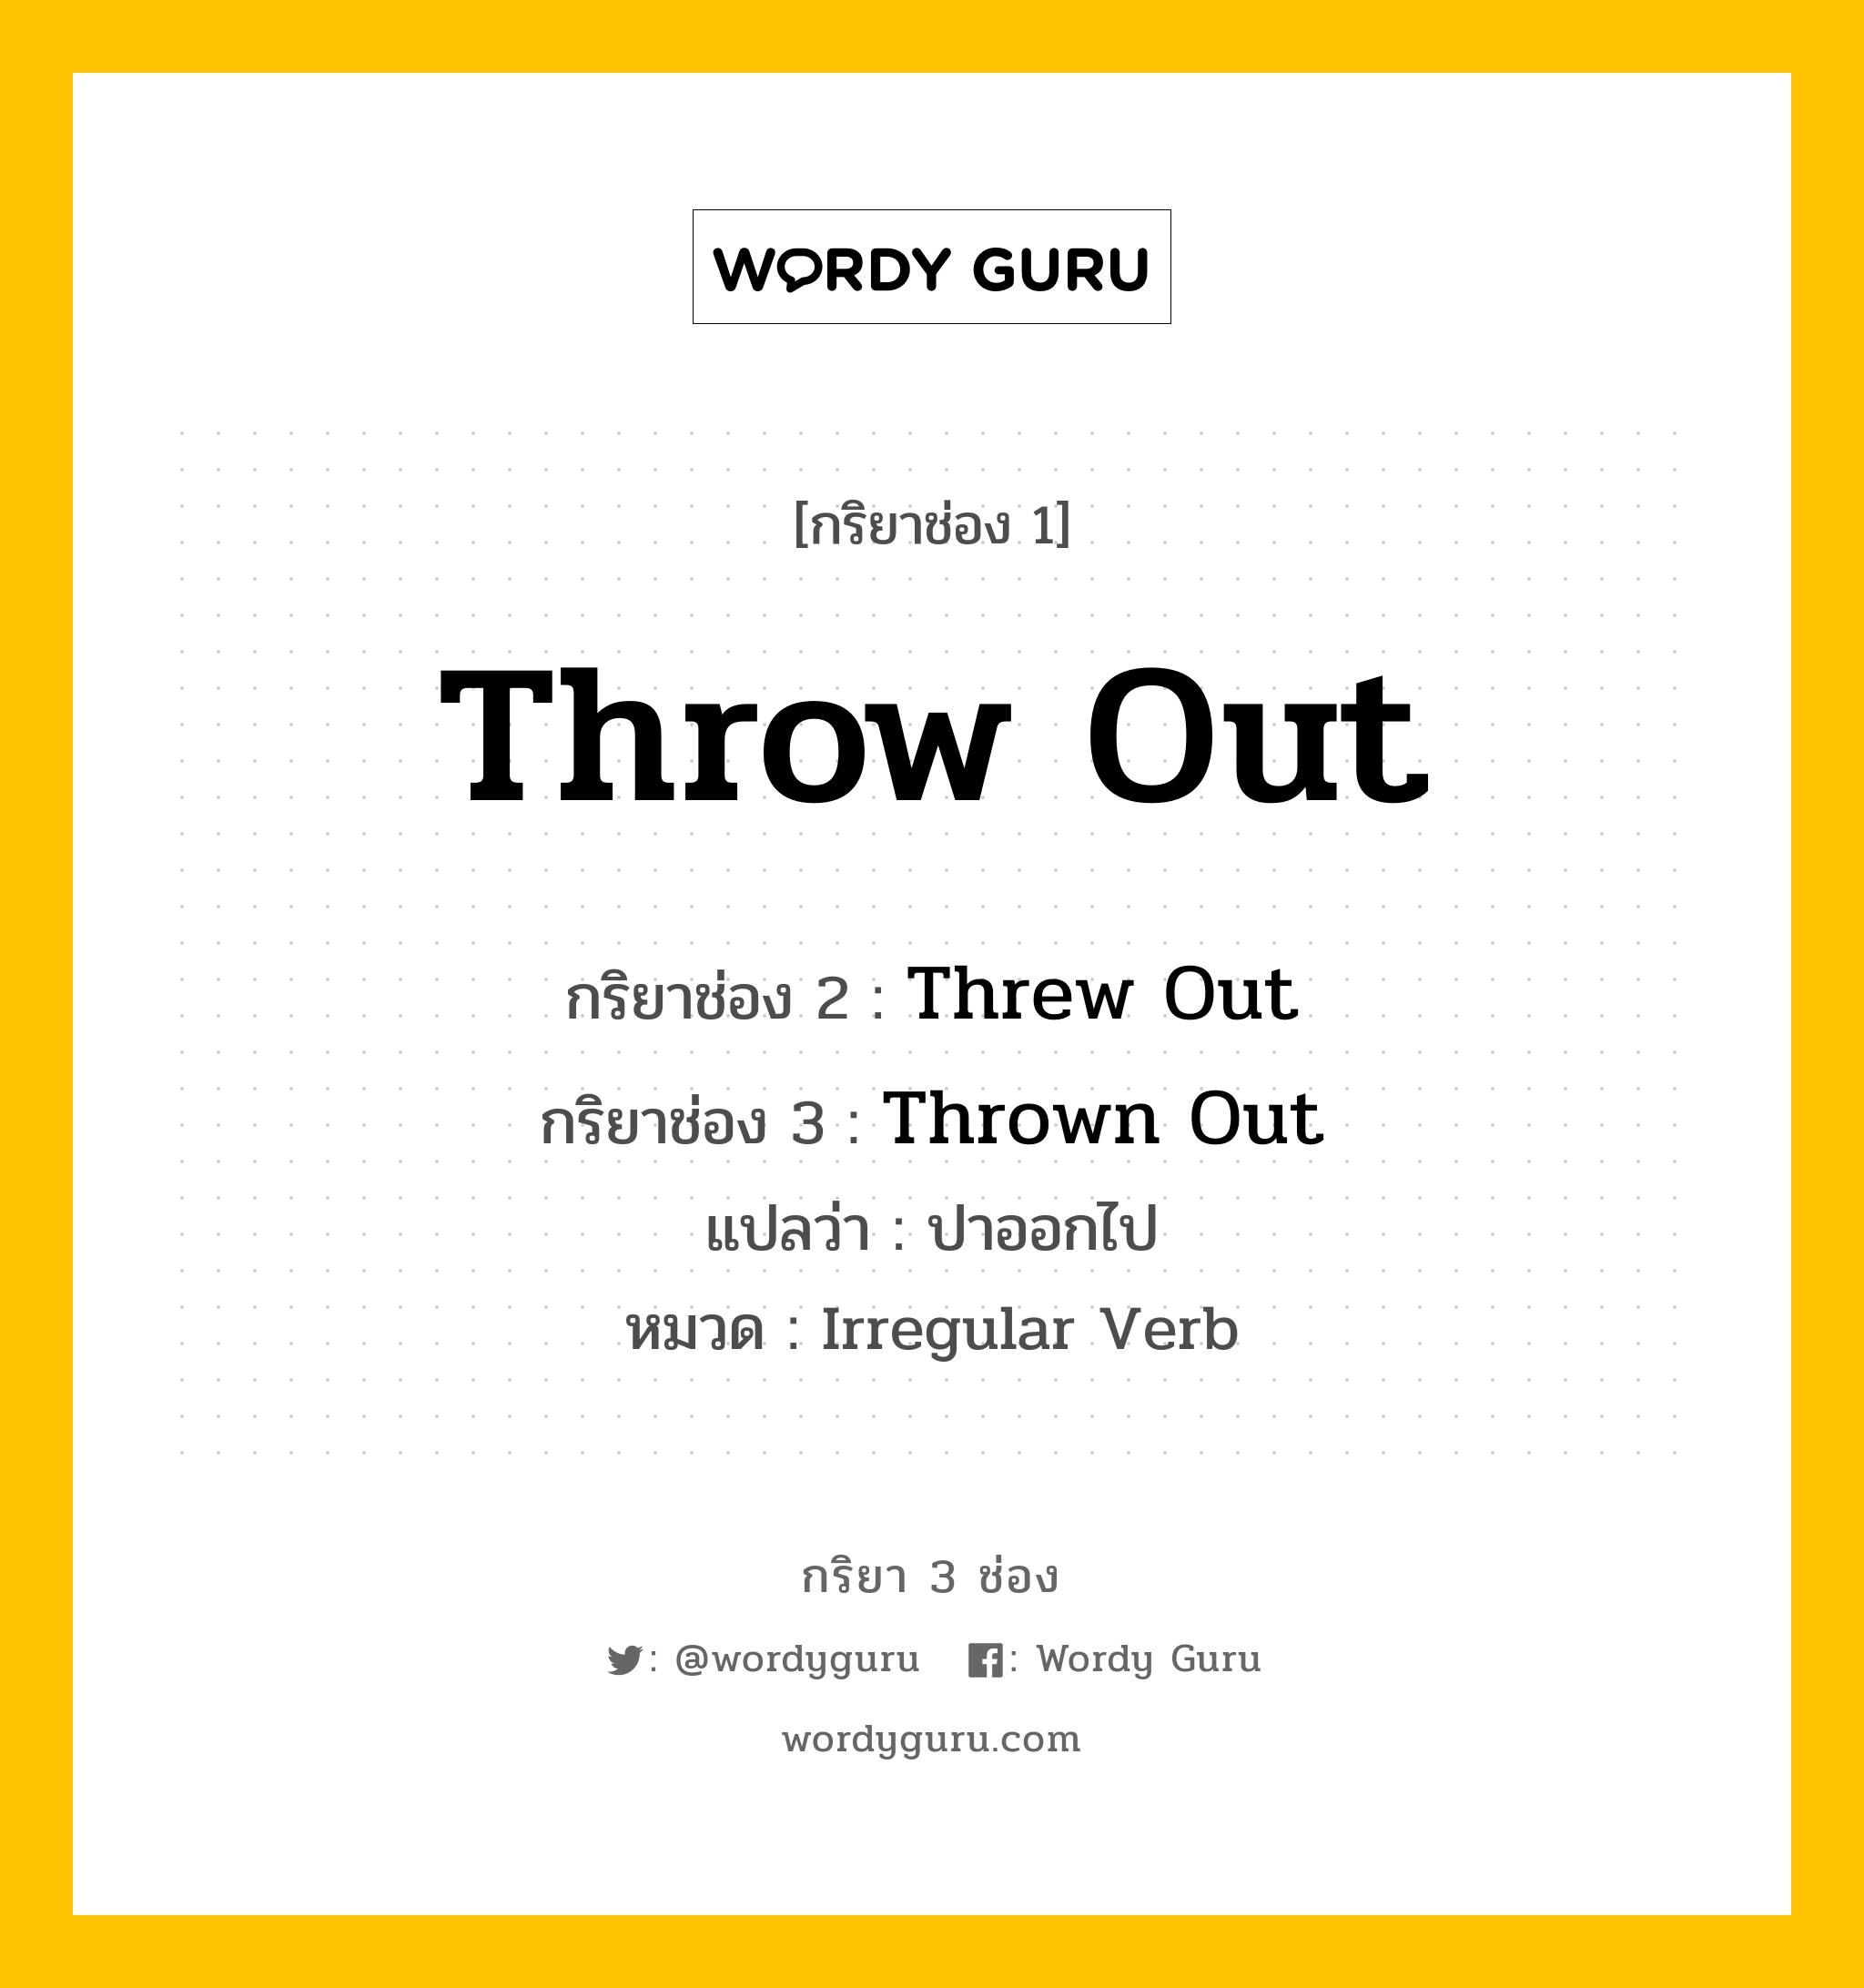 กริยา 3 ช่อง ของ Throw Out คืออะไร? มาดูคำอ่าน คำแปลกันเลย, กริยาช่อง 1 Throw Out กริยาช่อง 2 Threw Out กริยาช่อง 3 Thrown Out แปลว่า ปาออกไป หมวด Irregular Verb หมวด Irregular Verb